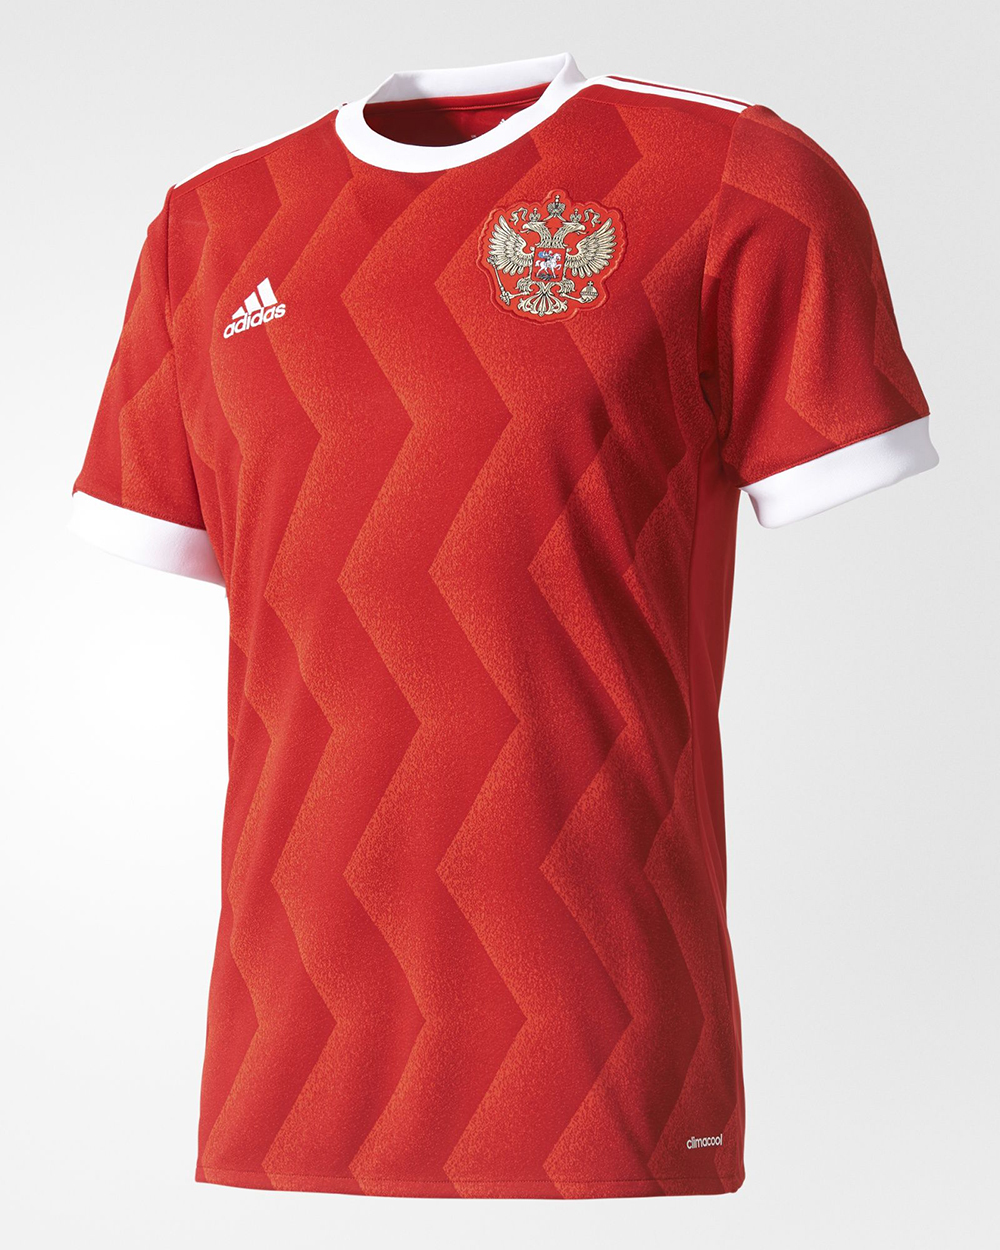 Camiseta adidas de Rusia Copa Confederaciones 2017